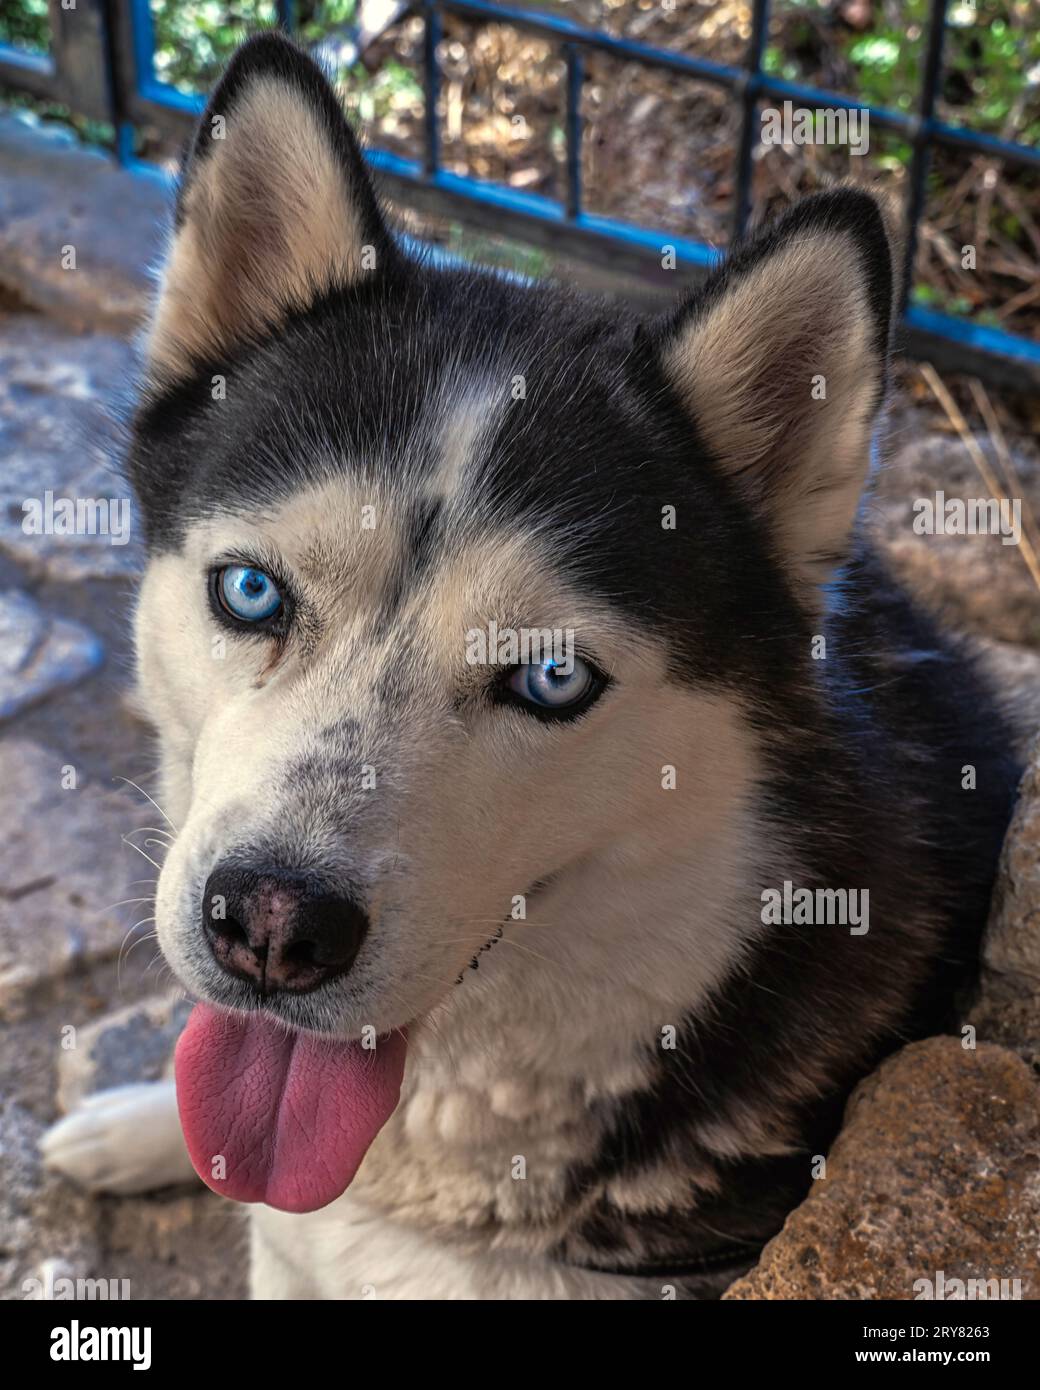 Porträt des Sibirischen Husky mit blauen Augen und schwarz-weißem Fell. Er wurde als Arbeitshund geboren und zählt heute zu den beliebtesten Begleithunden. Stockfoto